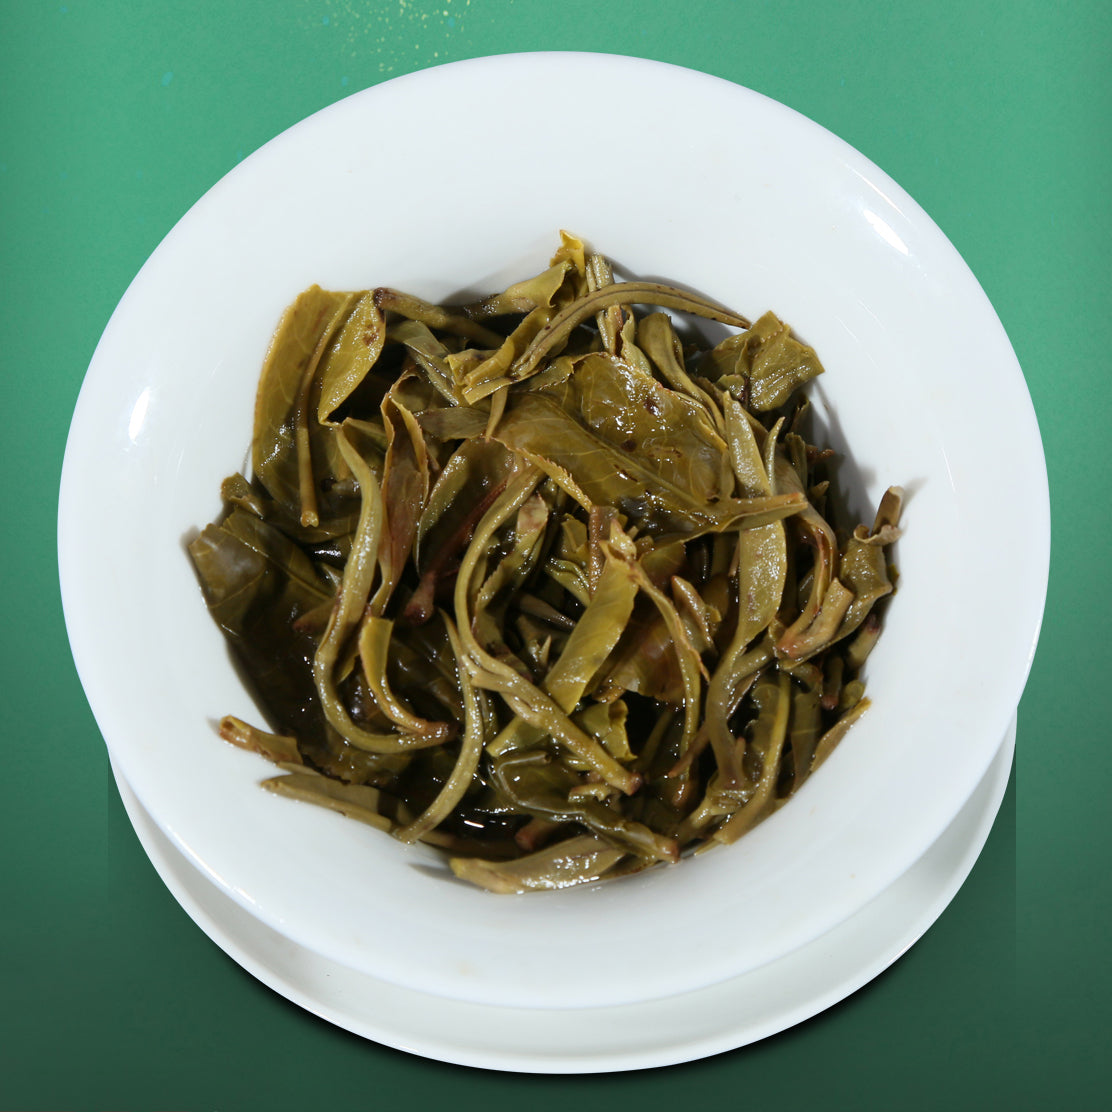 
                  
                    Chen Sheng Hao 2019 Yue Yuan Pu'er Tea Leaves after steep
                  
                